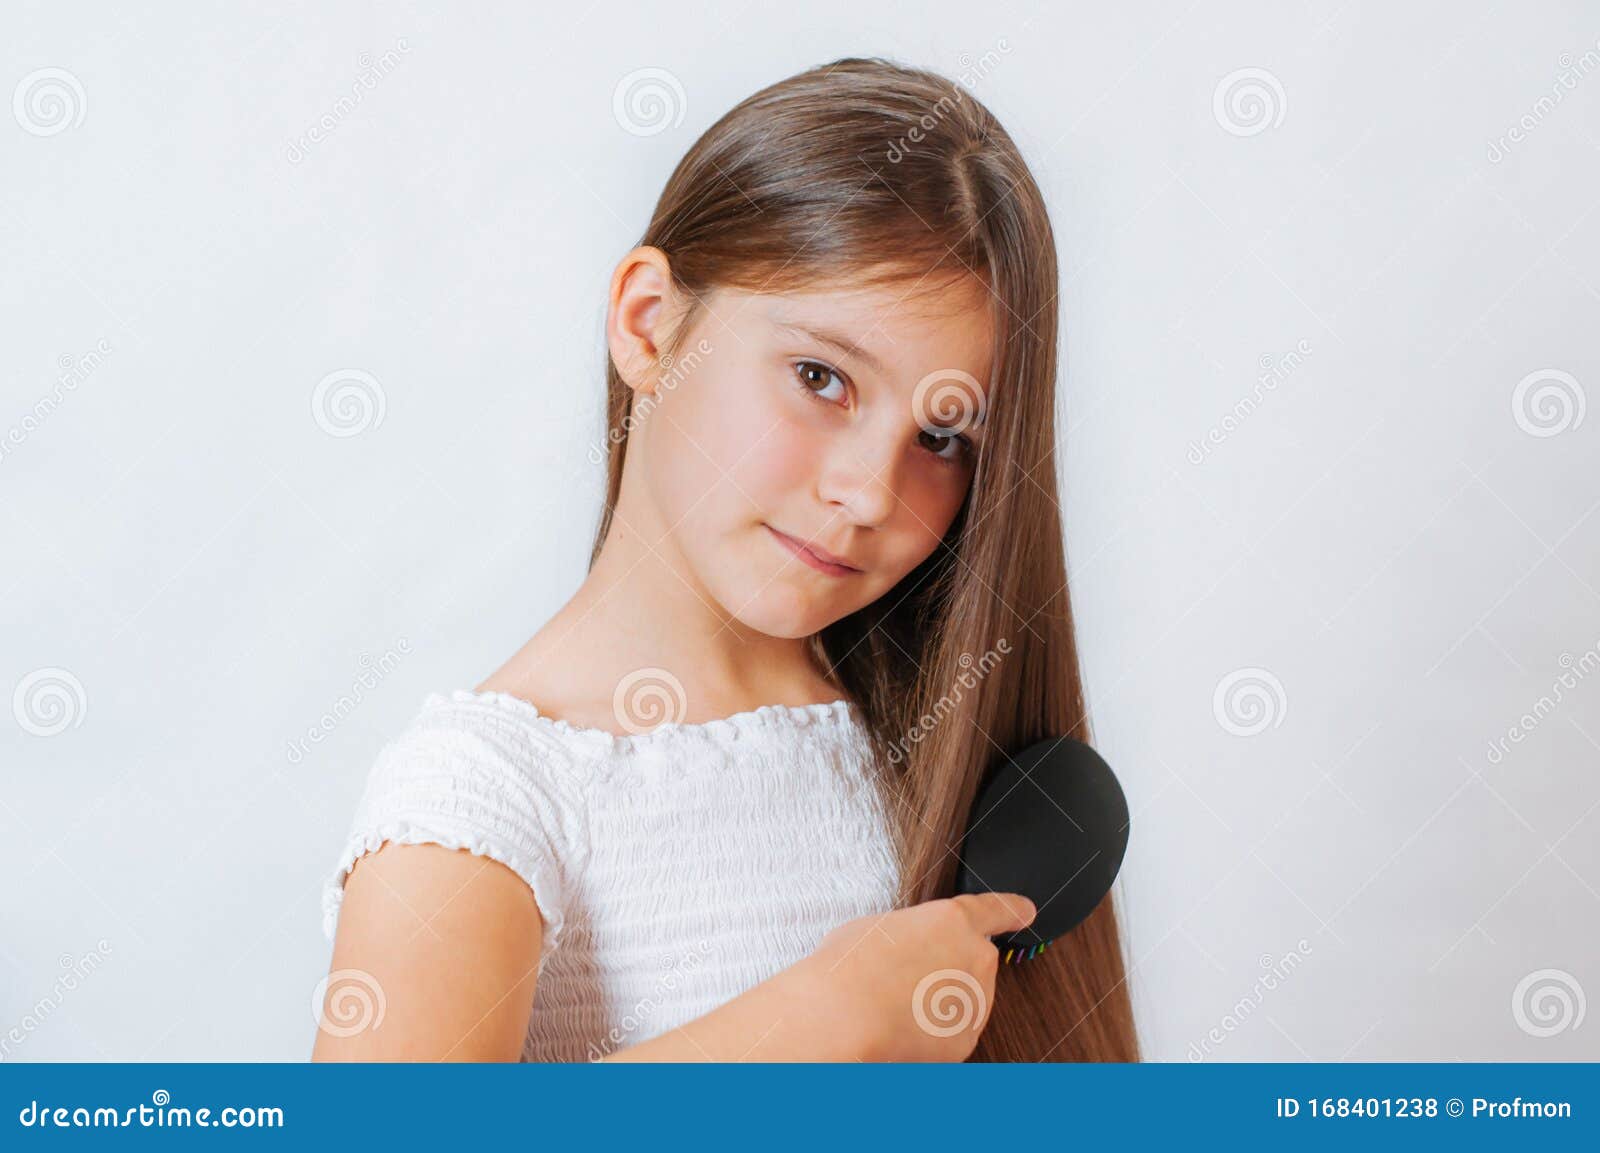 可爱的微笑小女孩梳梳头梳头 库存照片. 图片 包括有 理发, 滑稽, 孩子, 快乐, 背包, 乐趣, 逗人喜爱 - 168401312